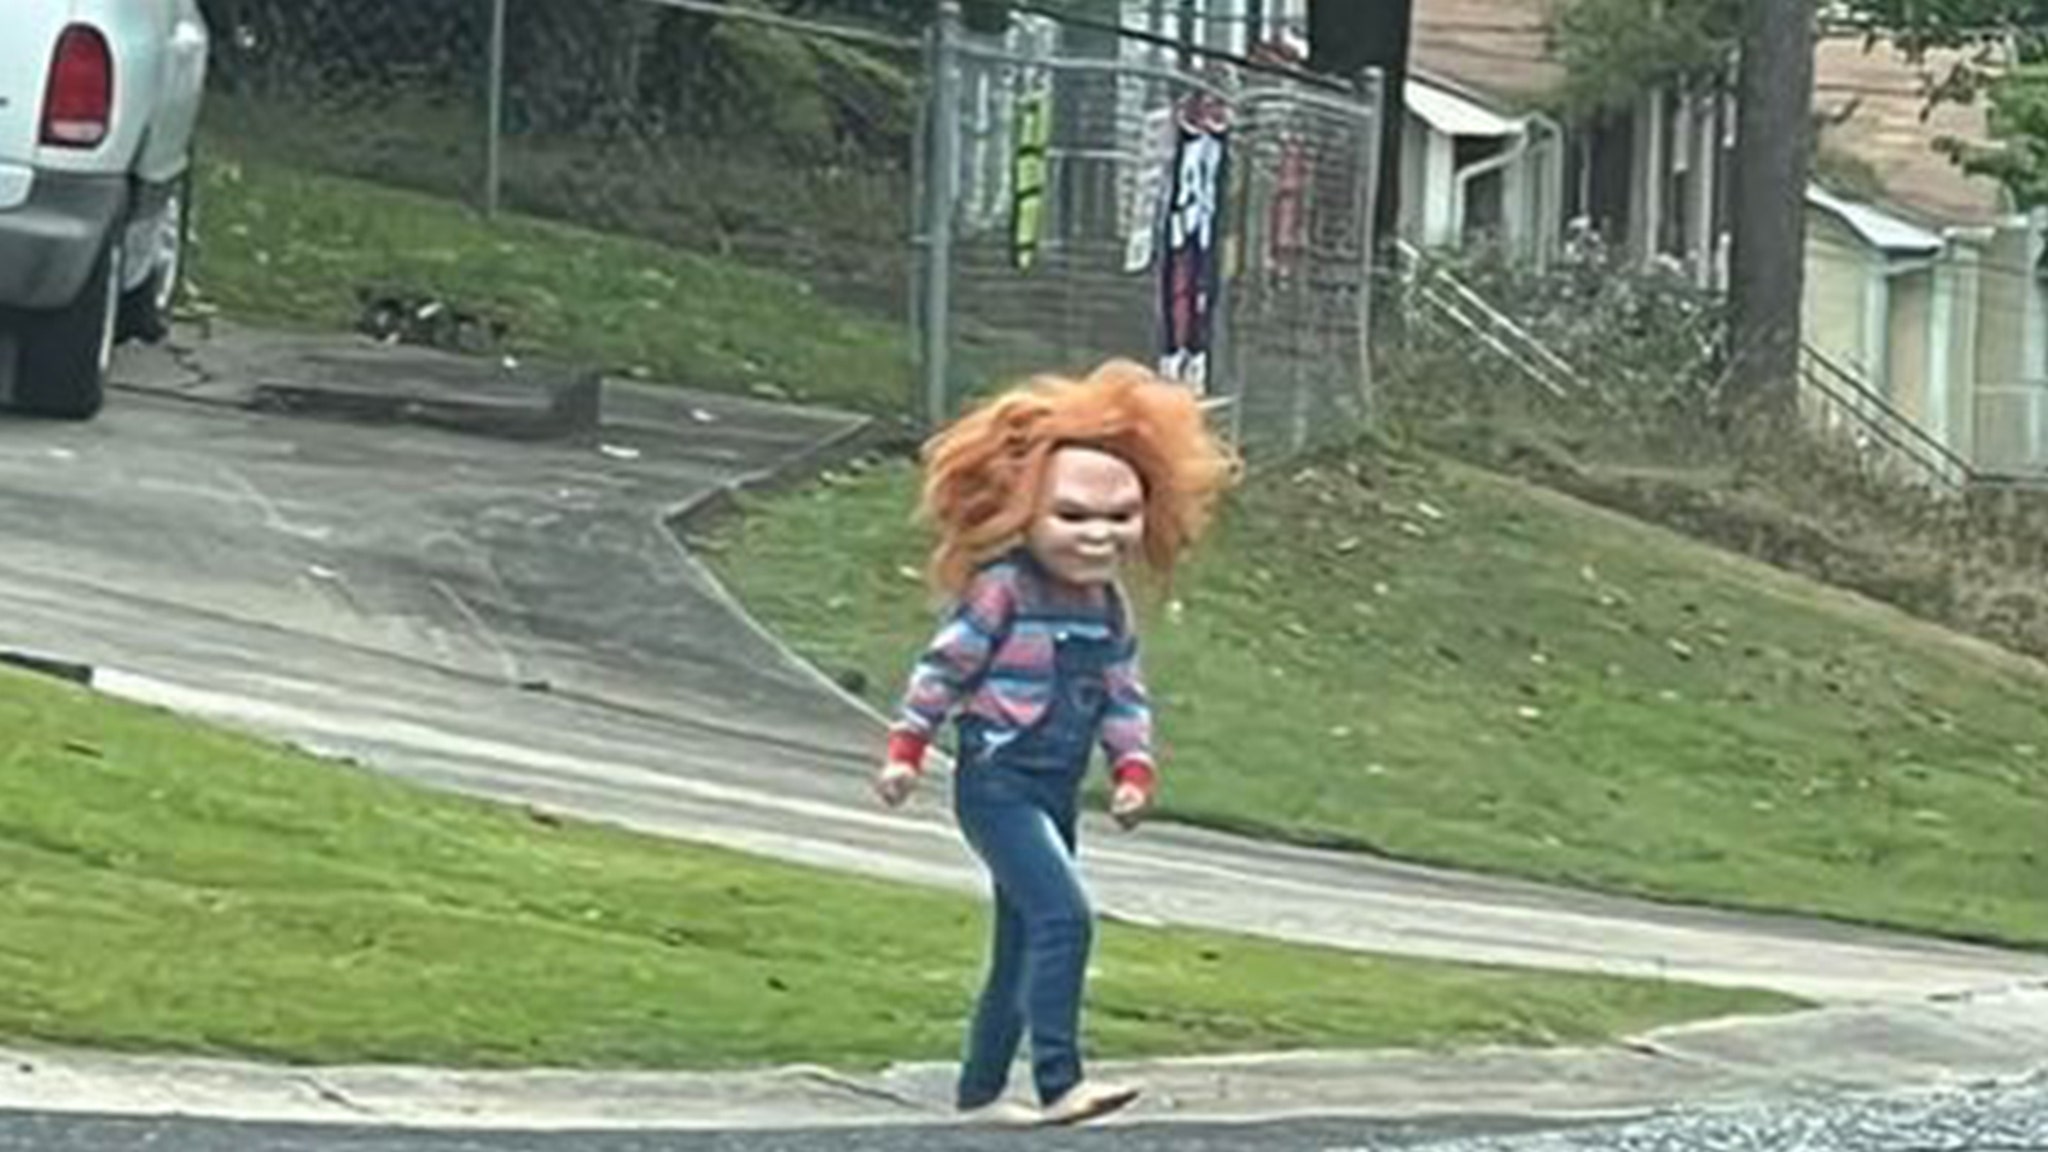 Kid Dresses as Chucky the Doll in Alabama Neighborhood, Scares Neighbors